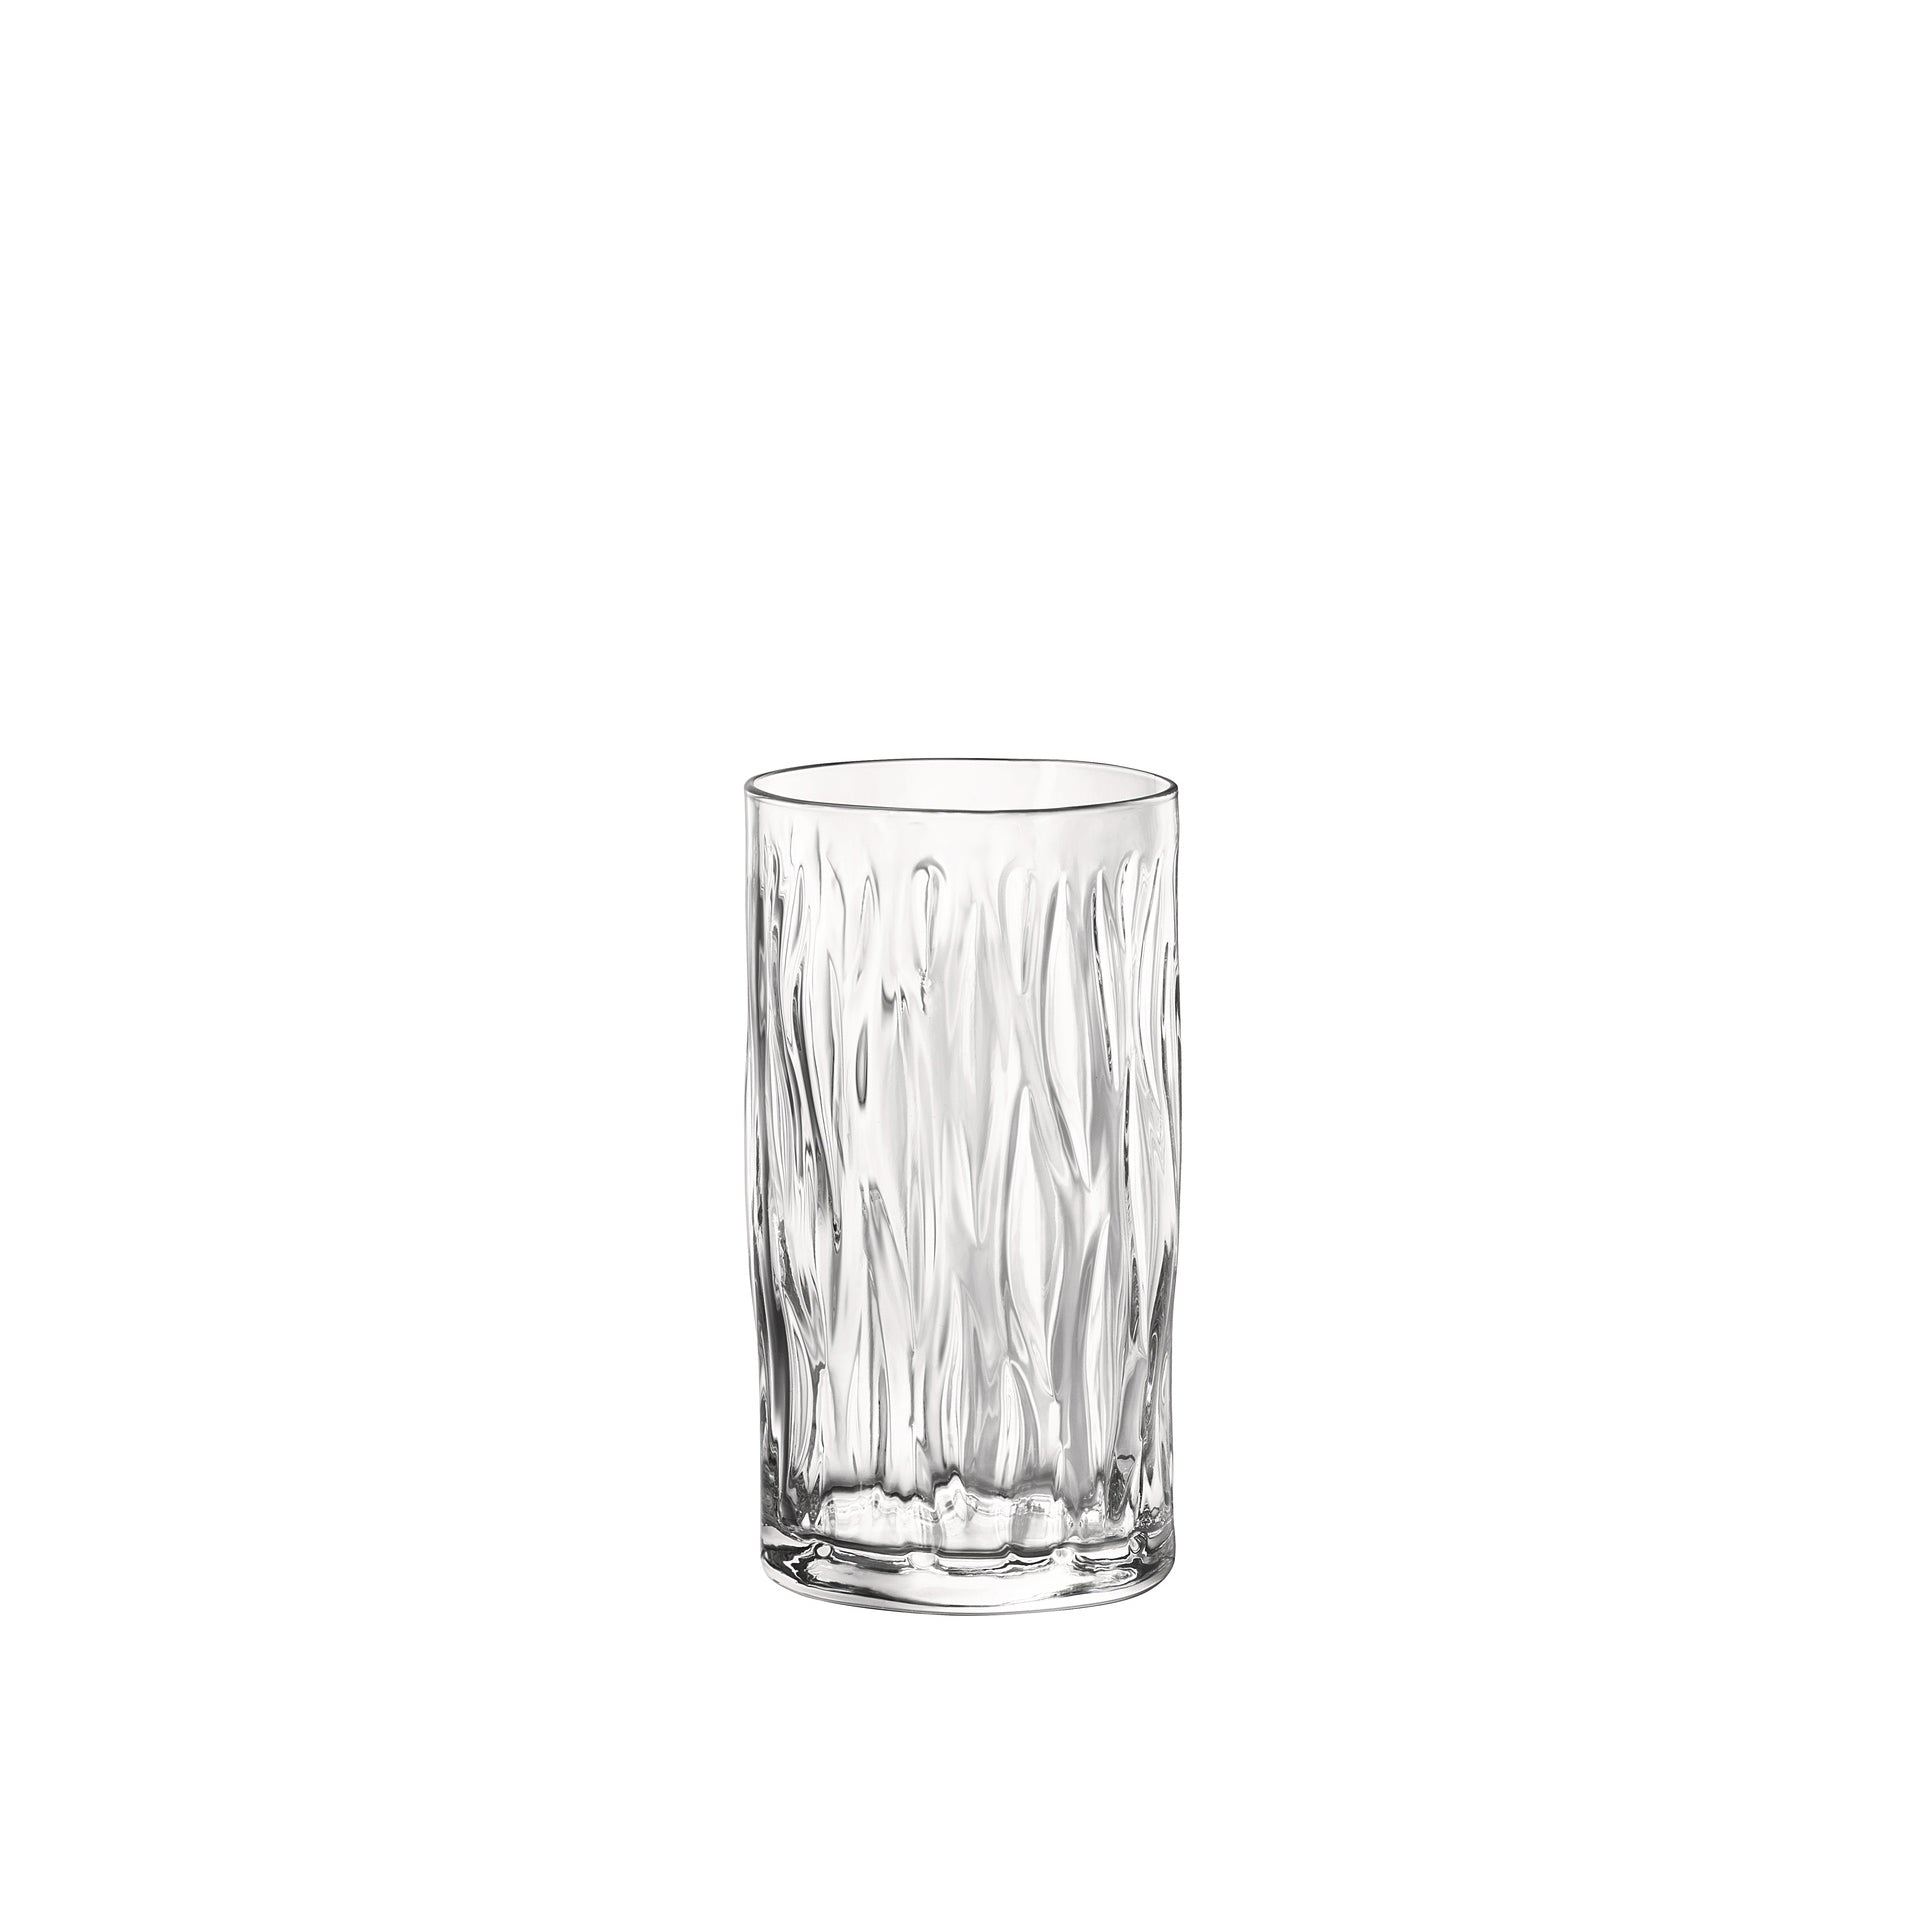 Wind 16.25 oz. Cooler Drinking Glasses (Set of 6)